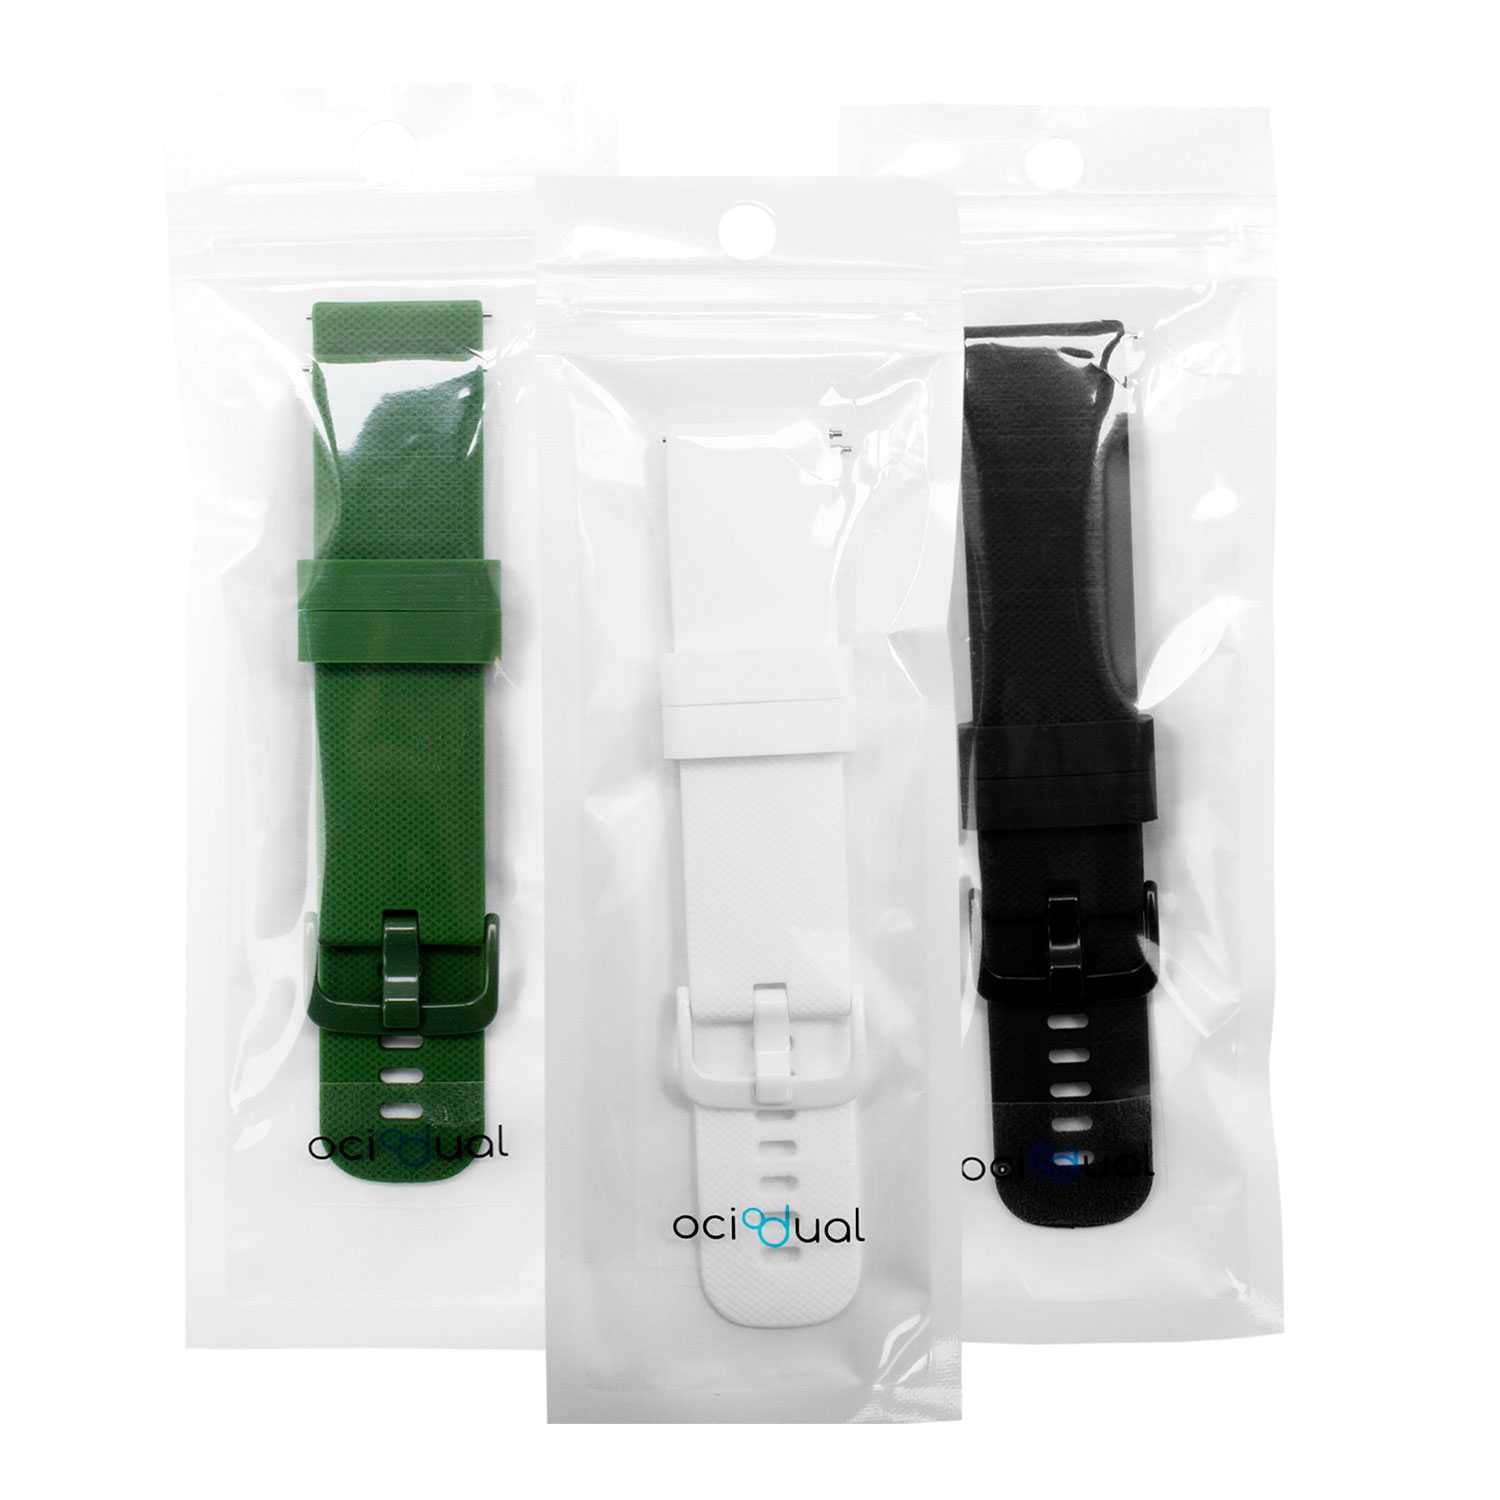 Pack de 3 Correas de Silicona para Reloj,22mm, Smartwatch con liberación rápida, Compatible con Amazfit, Garmin, Samsung Galaxy Watch, para Hombre y Mujer,Negro/Blanco/Verde Militar